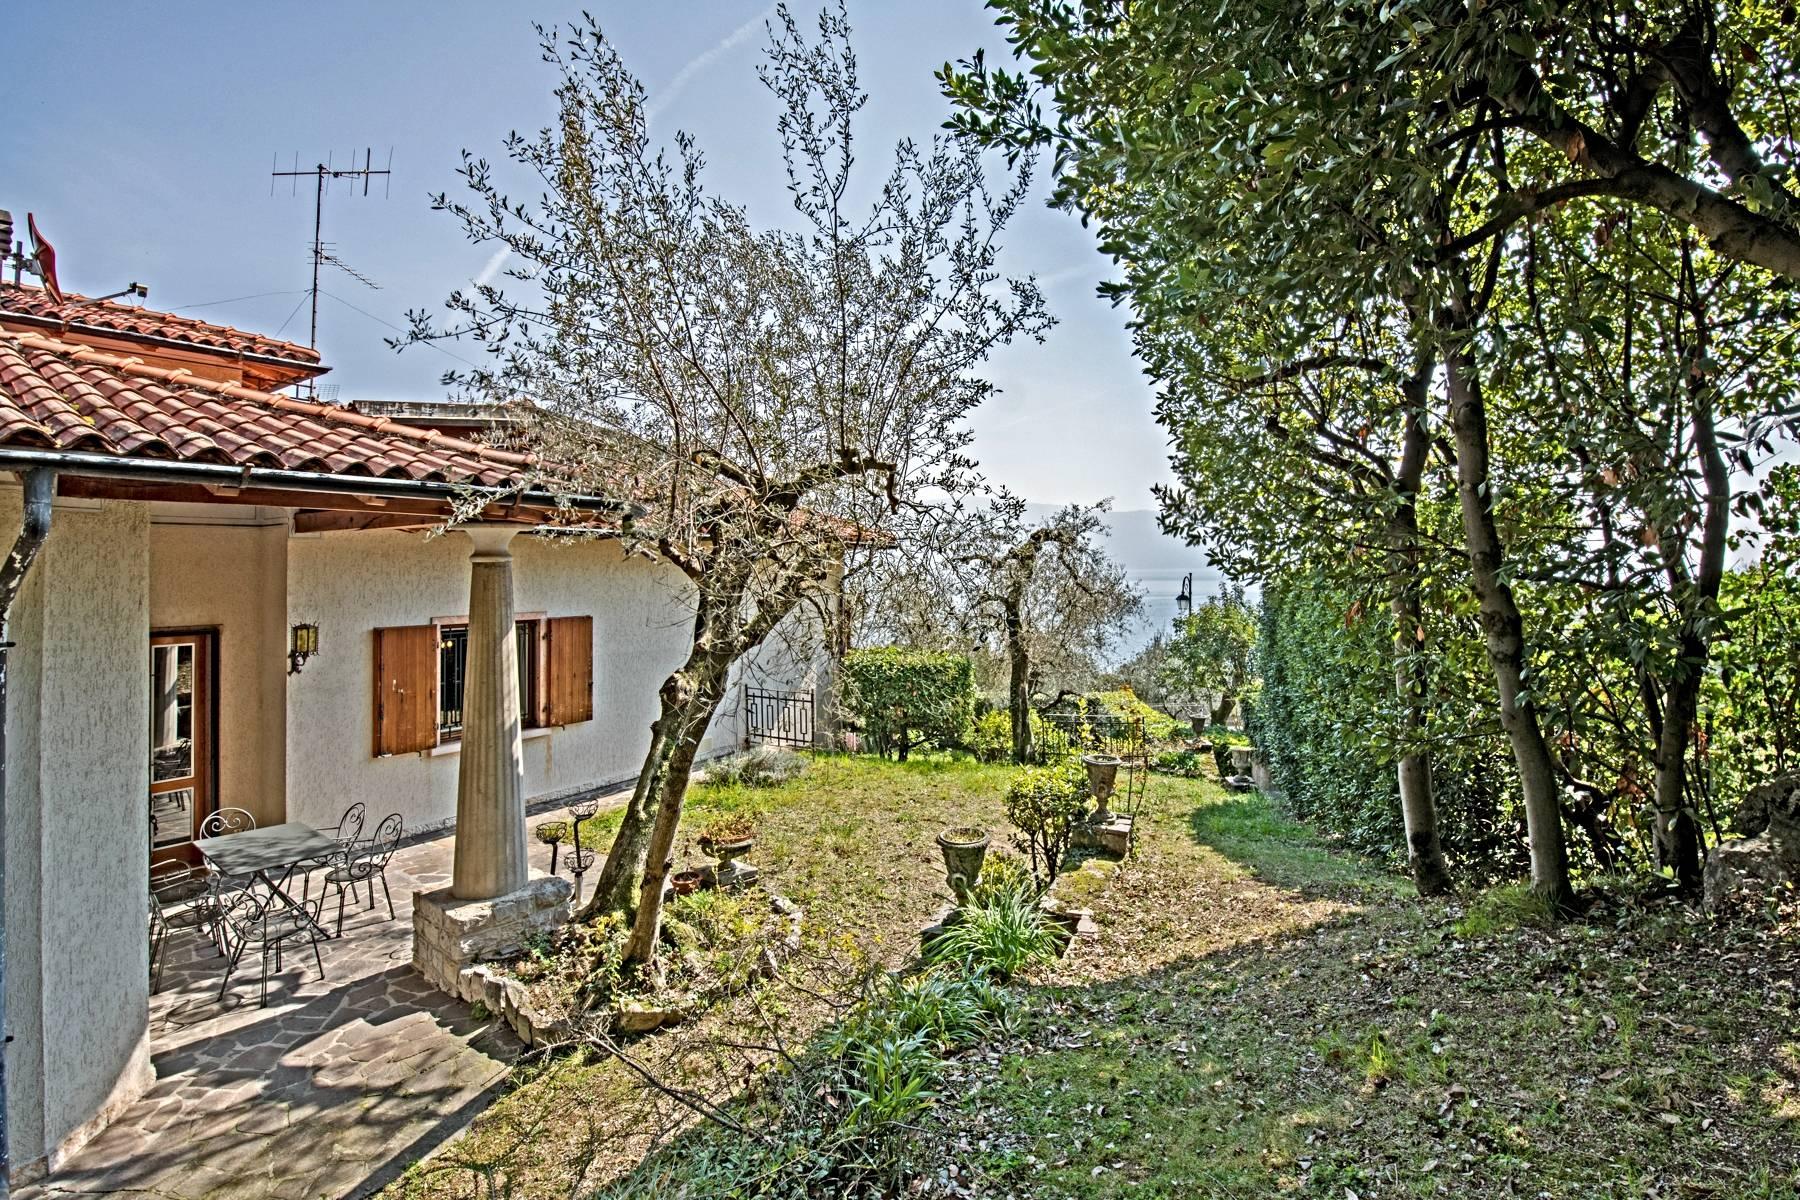 Villa in Gargnano inmitten der Olivenbäume vom Gardasee mit herrlichem Seeblick - 31